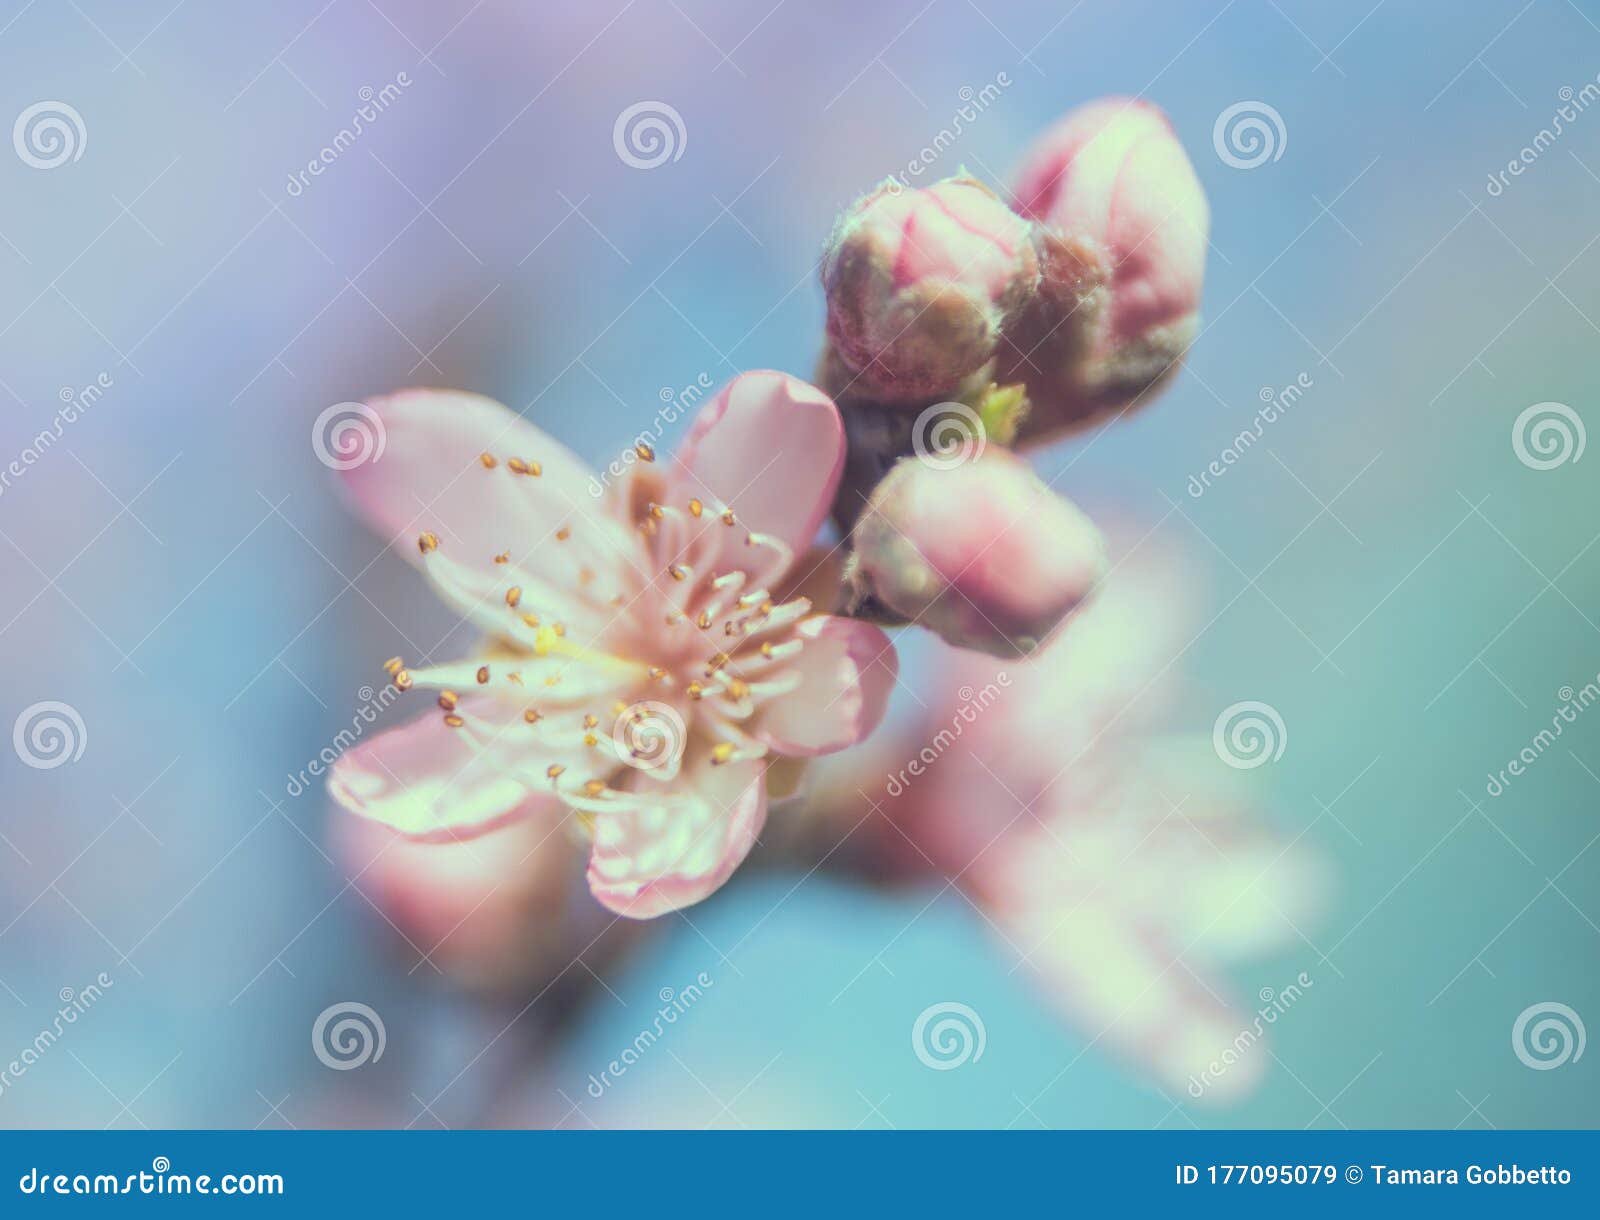 fotografia macro di fiori da frutto